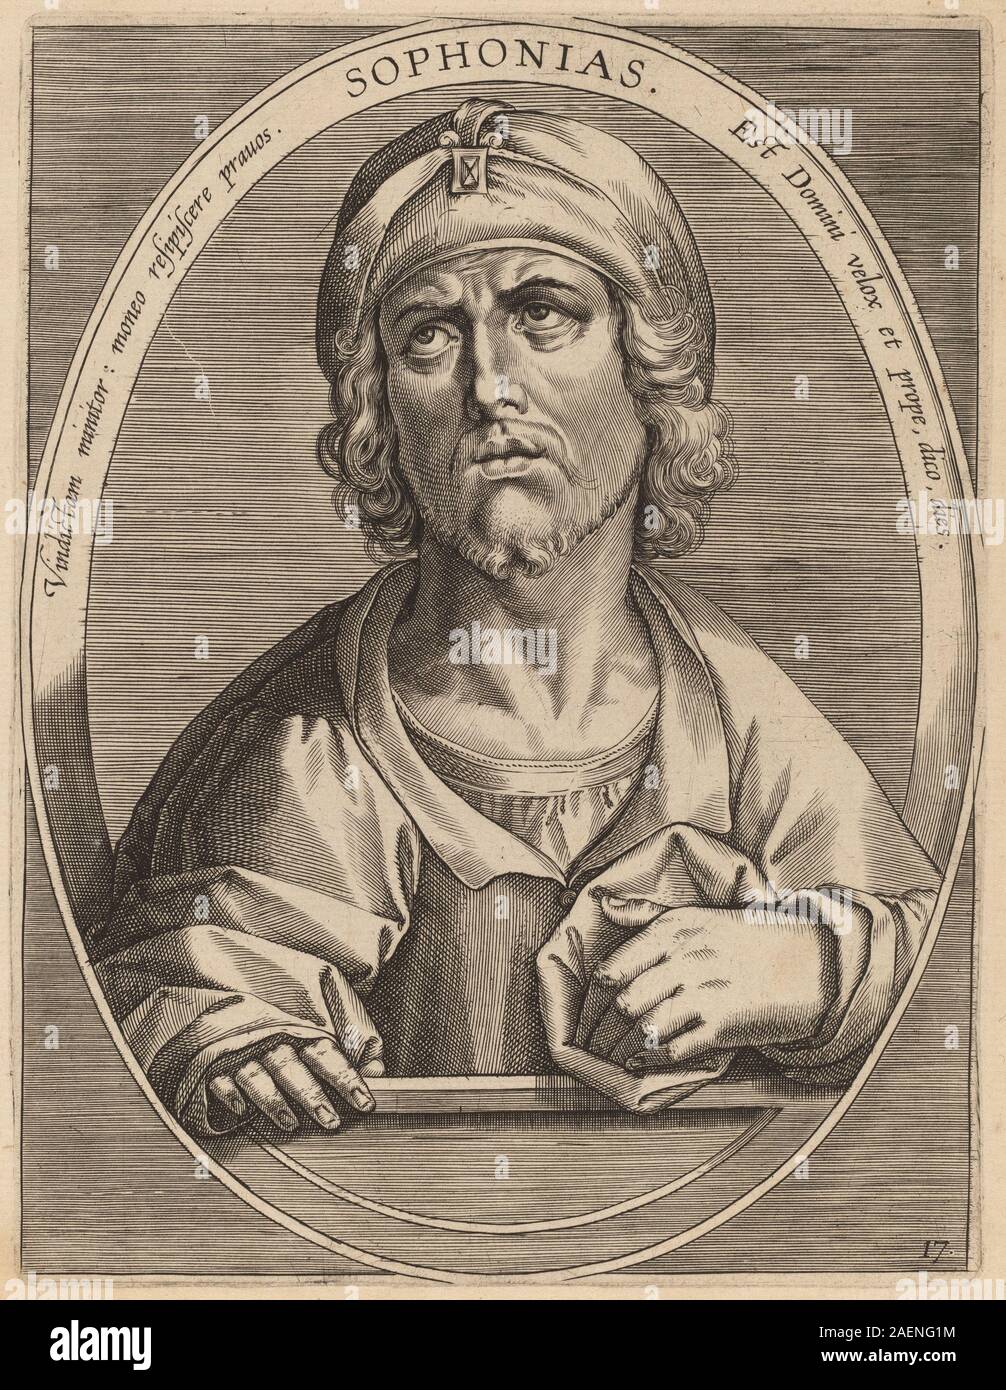 Theodor Galle after Jan van der Straet, Sophonias, published 1613, Sophonias; published 1613 Stock Photo